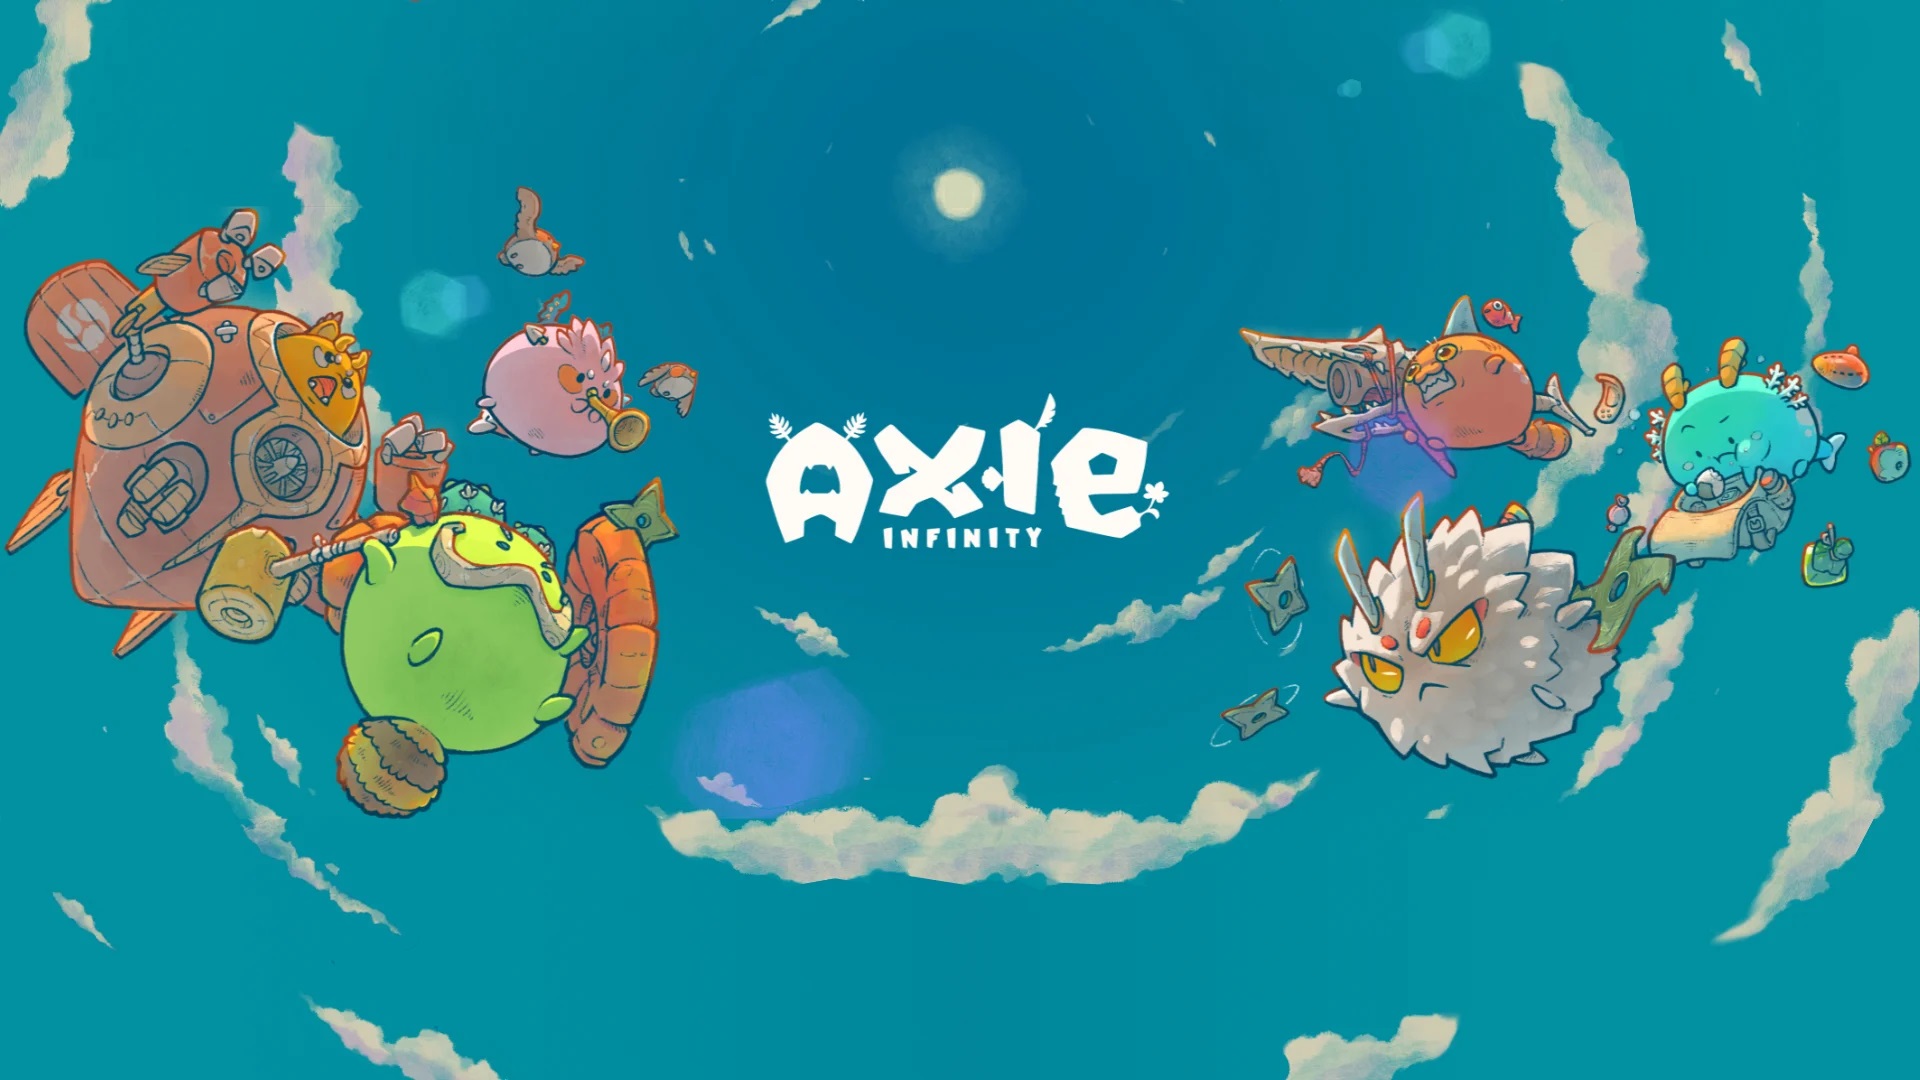 Axie Infinity Sebuah Game Yang Berbasis Pada Cryptocurrency Dan Nft Cgi Cerita Games Indonesia